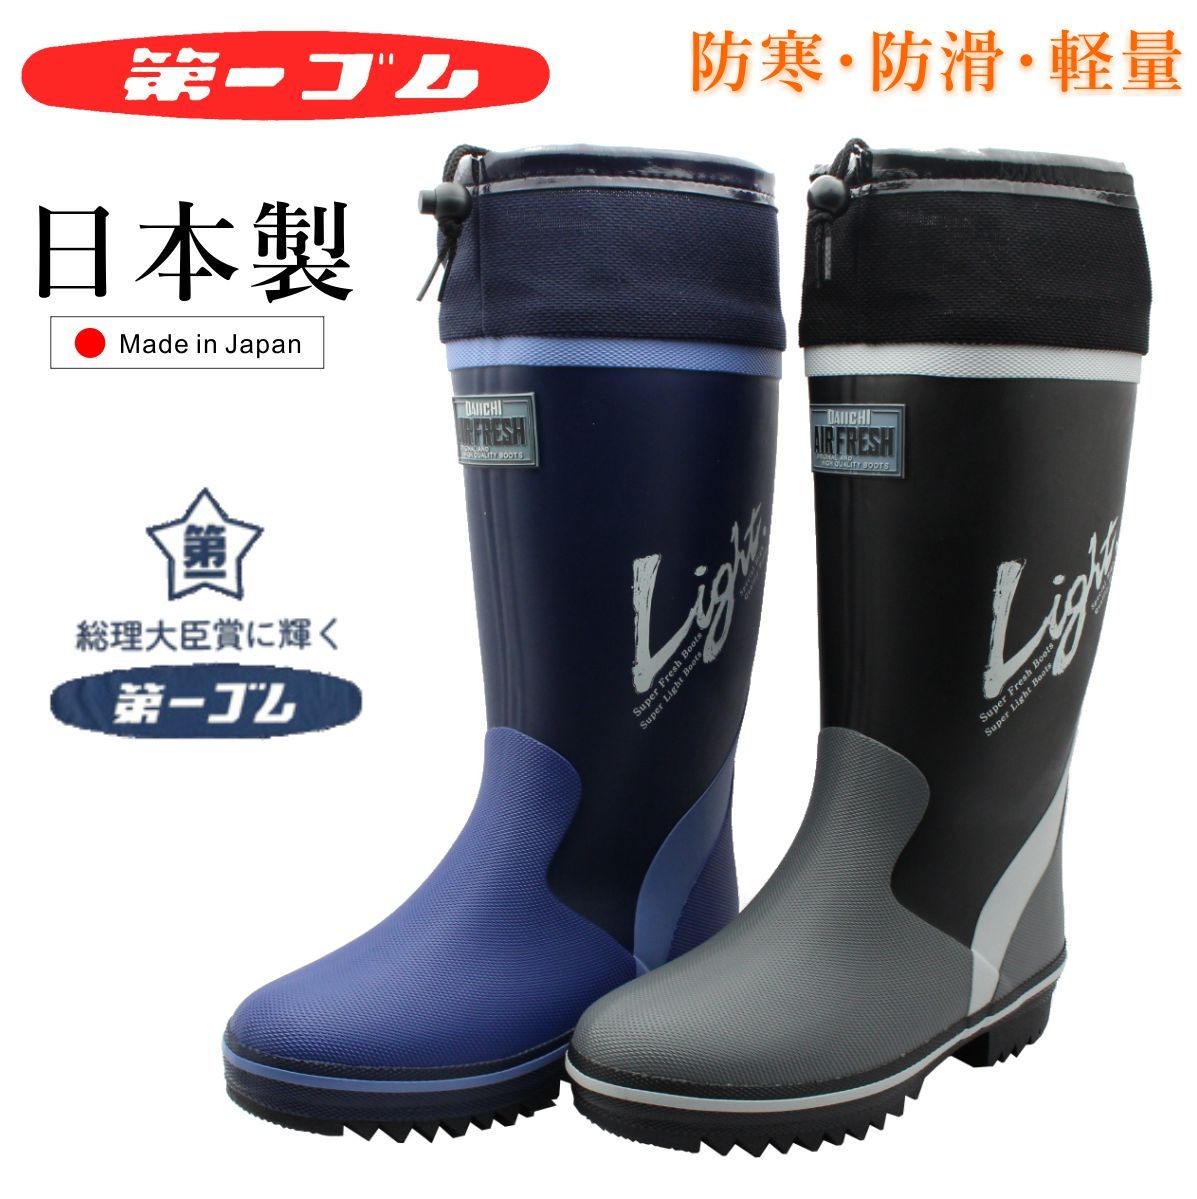 第一ゴム メンズ ライトアップ K8 紳士 長靴 防滑 防暖 軽量 日本製 中